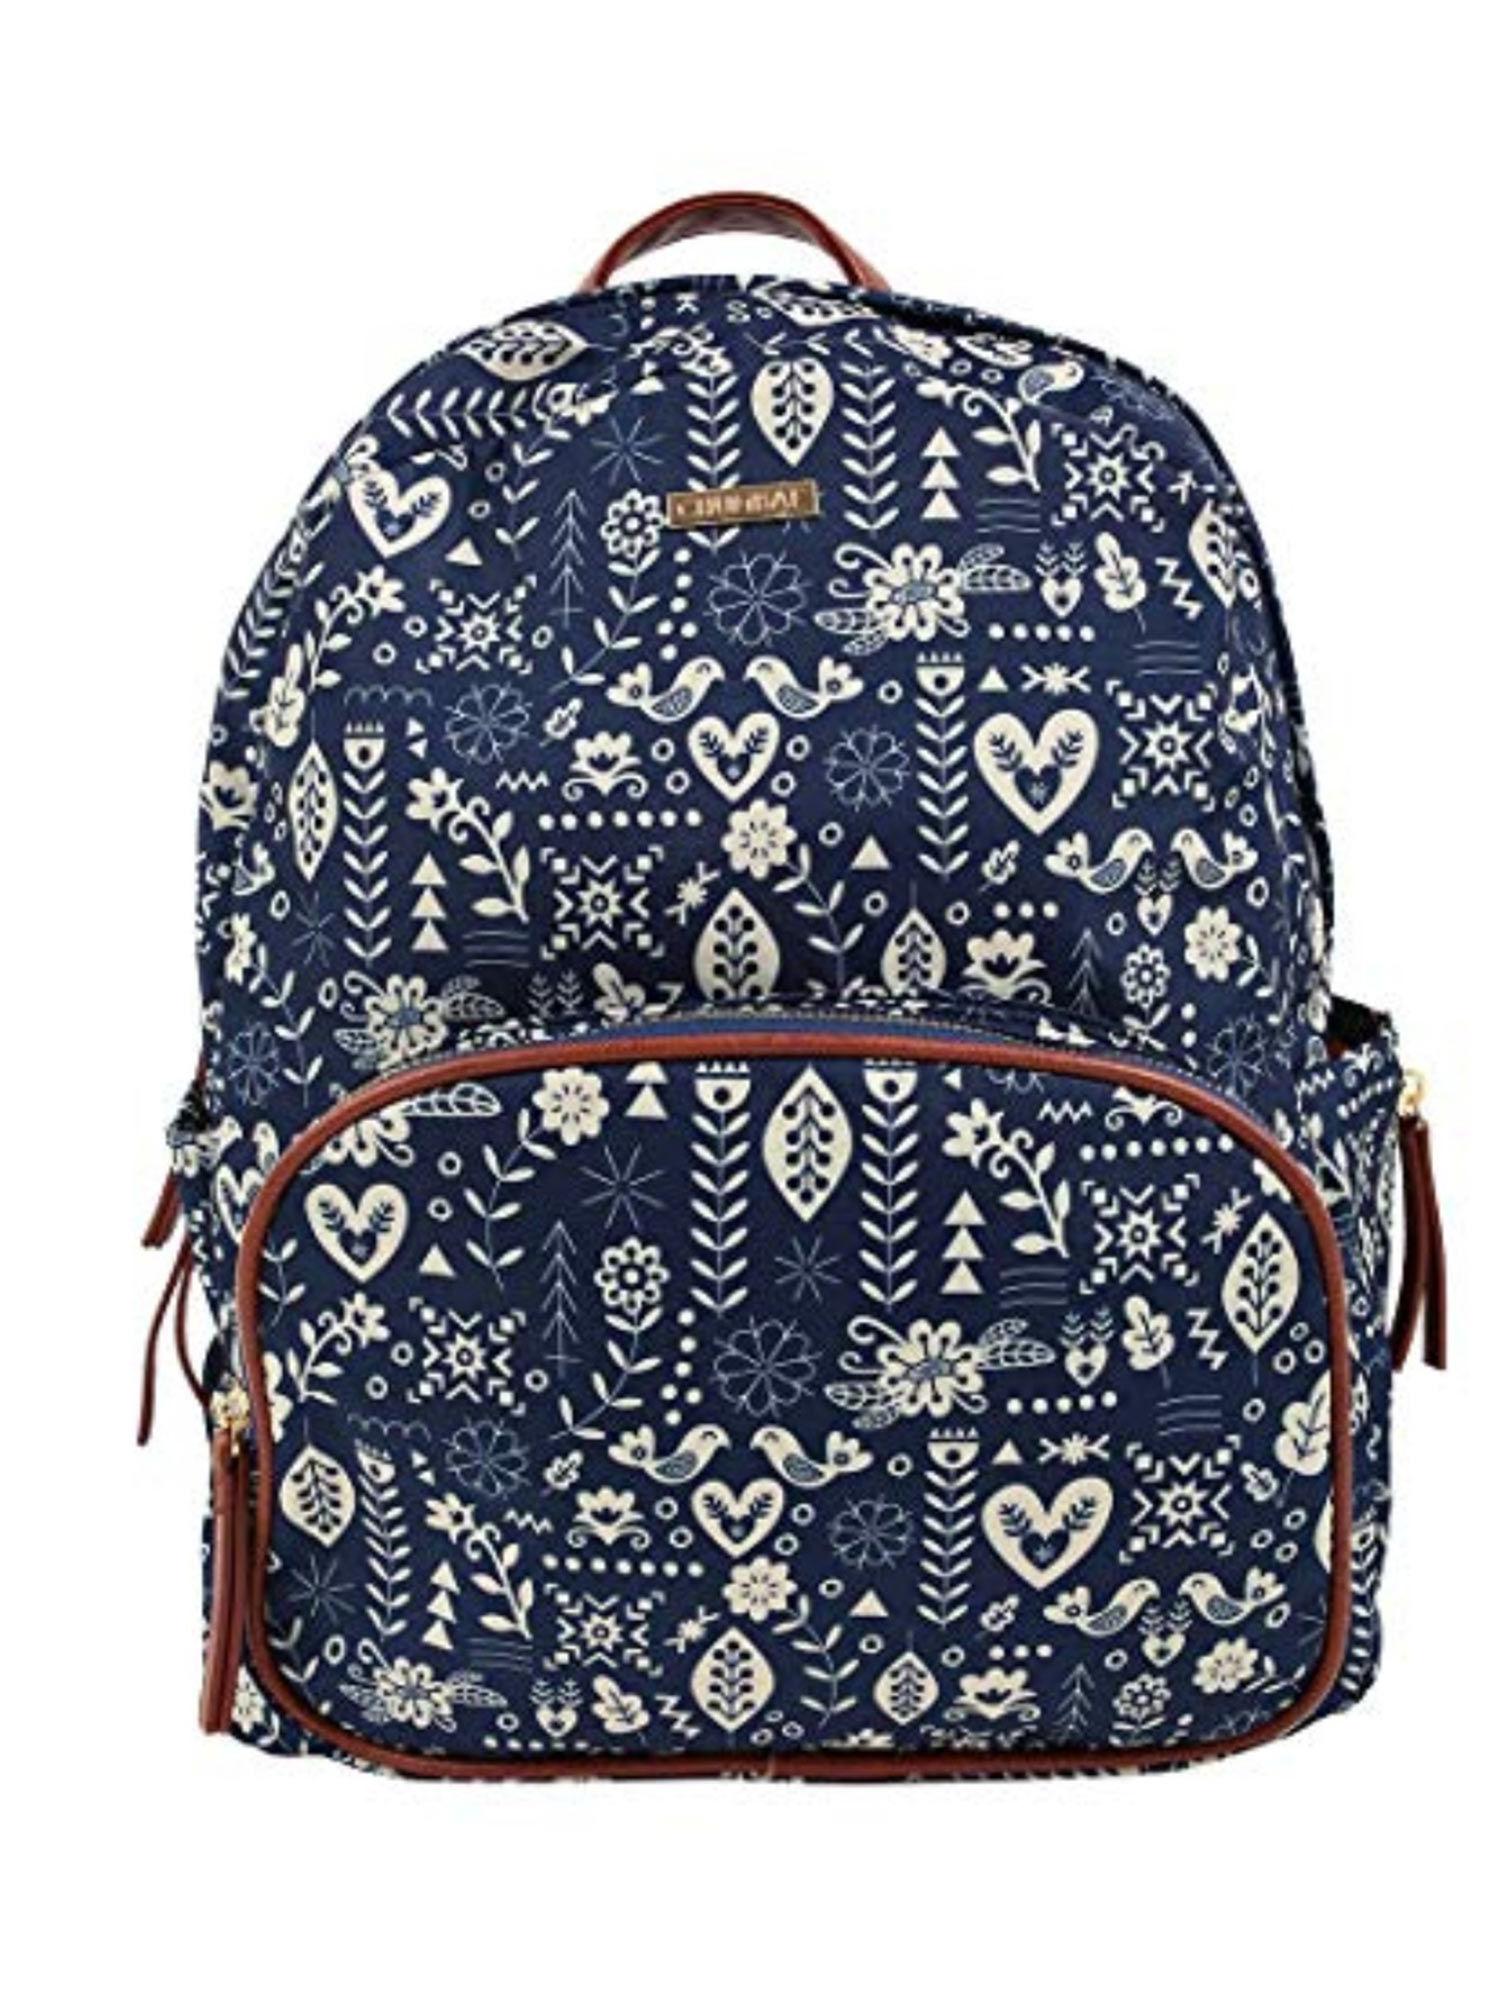 navy blue printed backpack